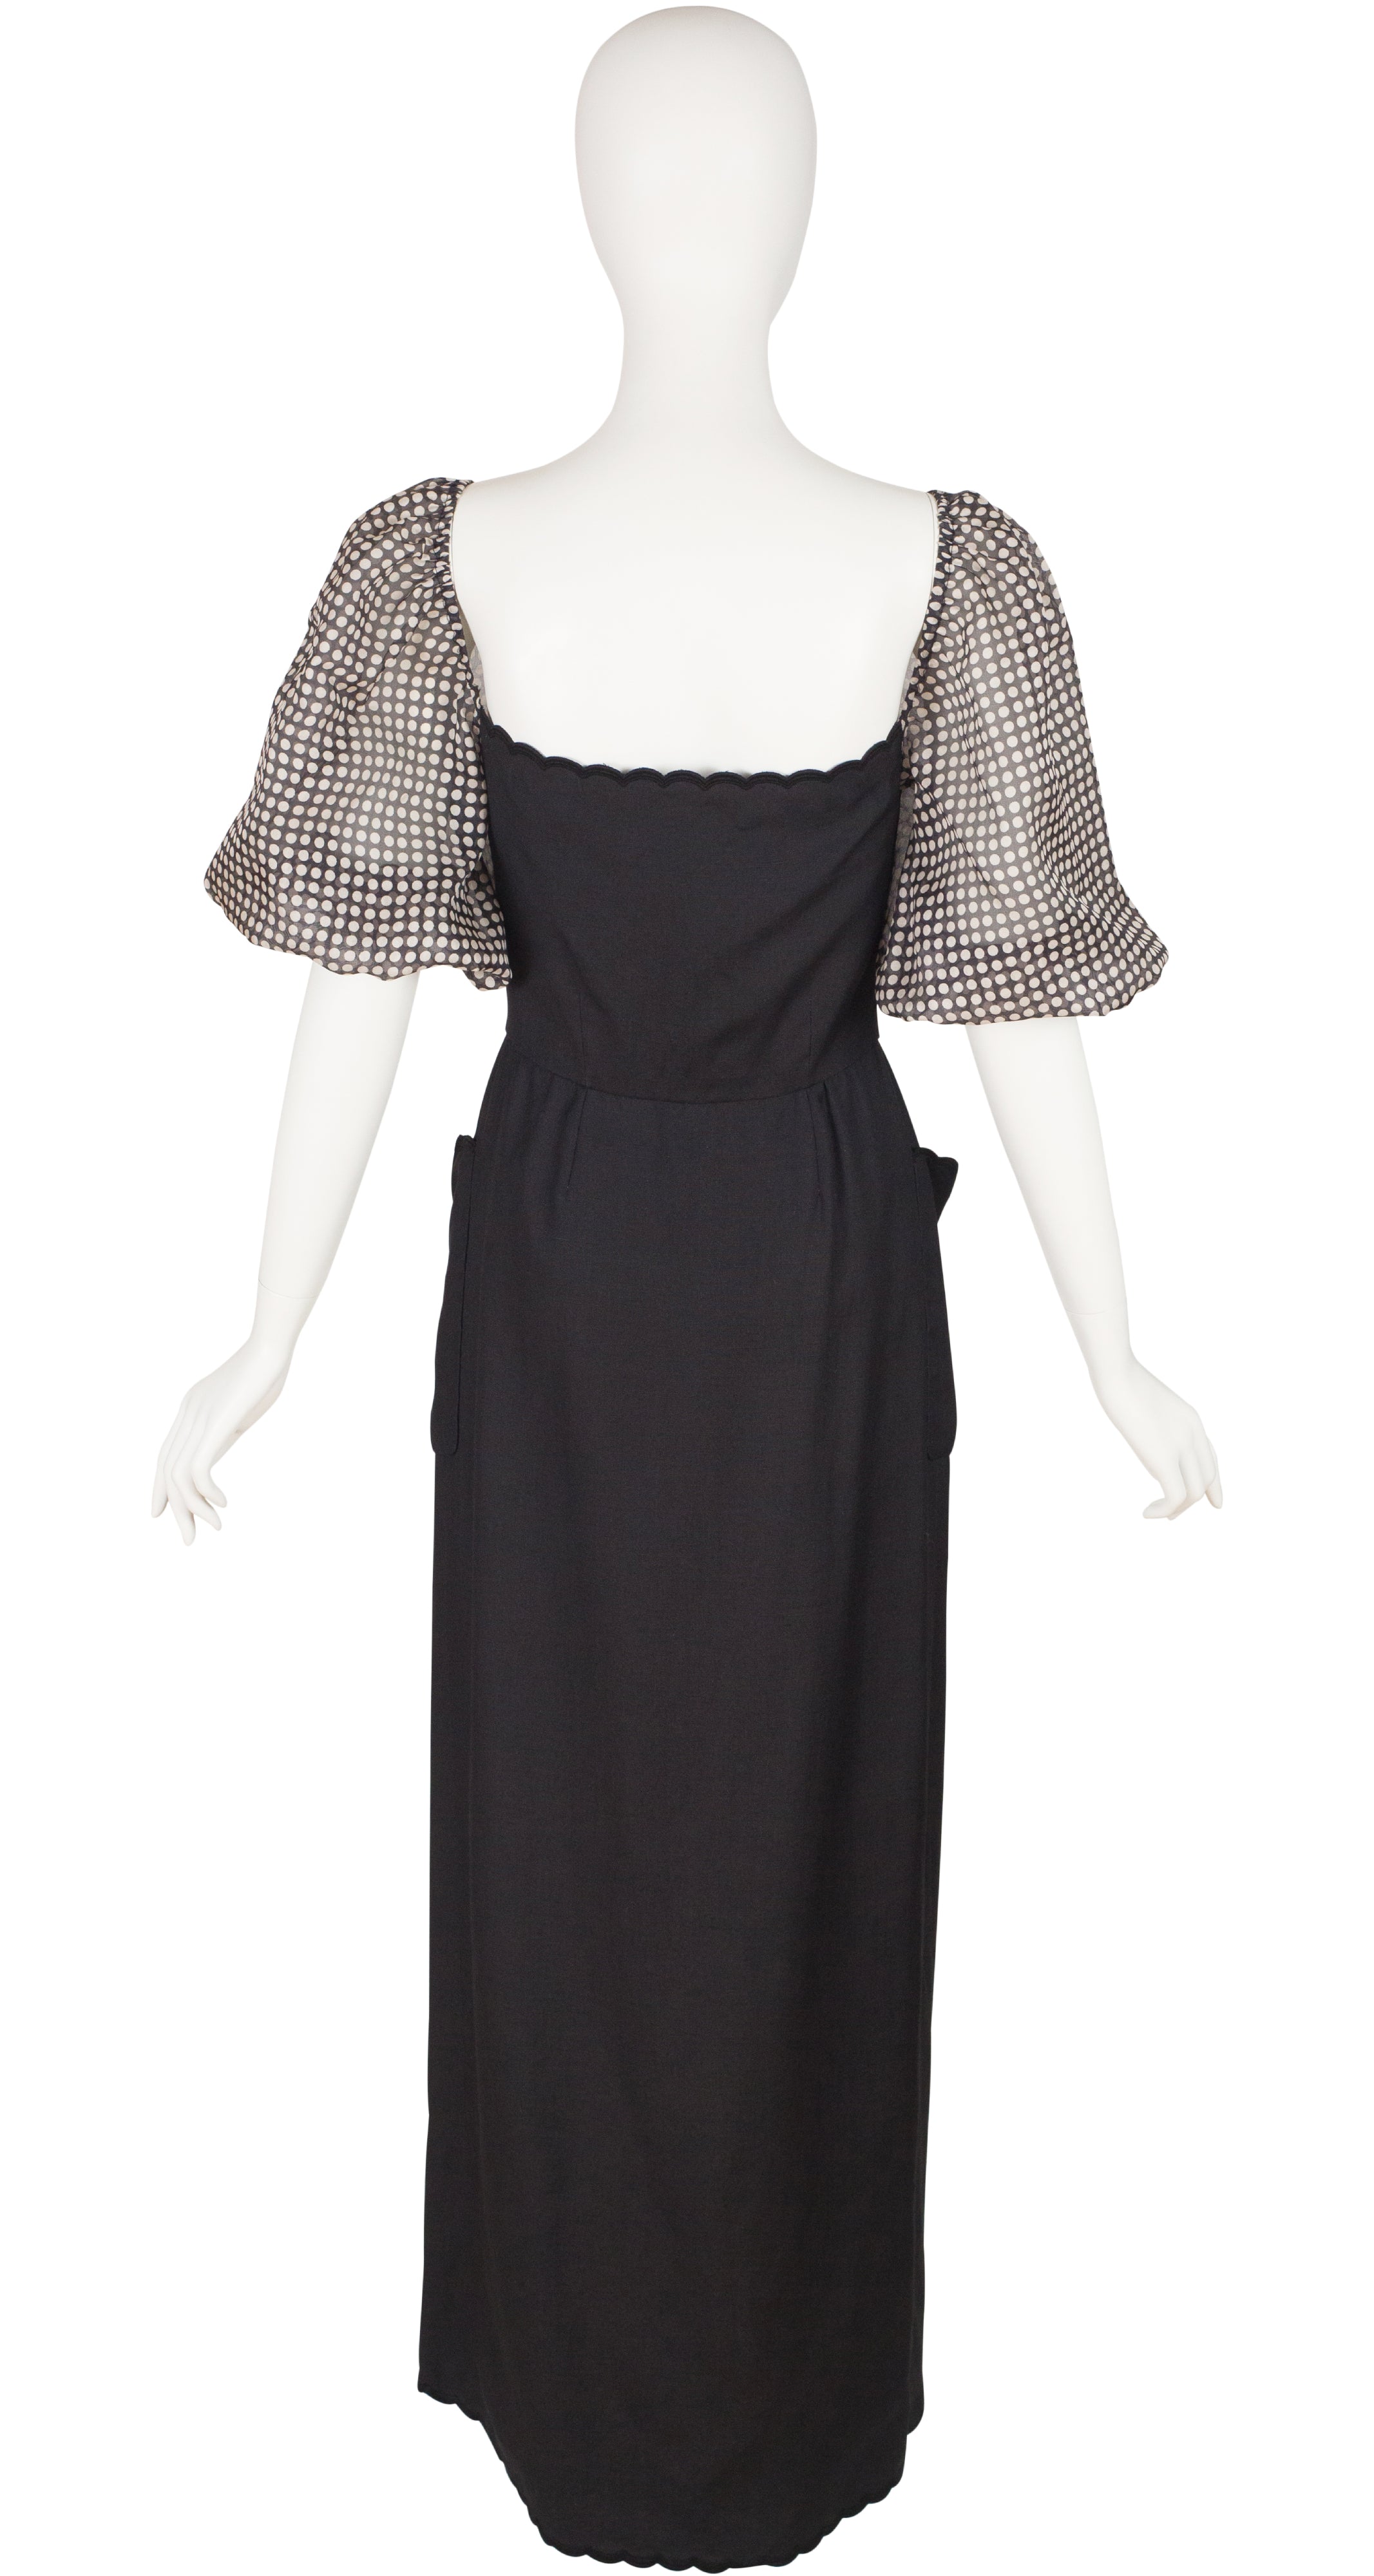 1970s Black & White Polka-Dot Puff Sleeve Dress